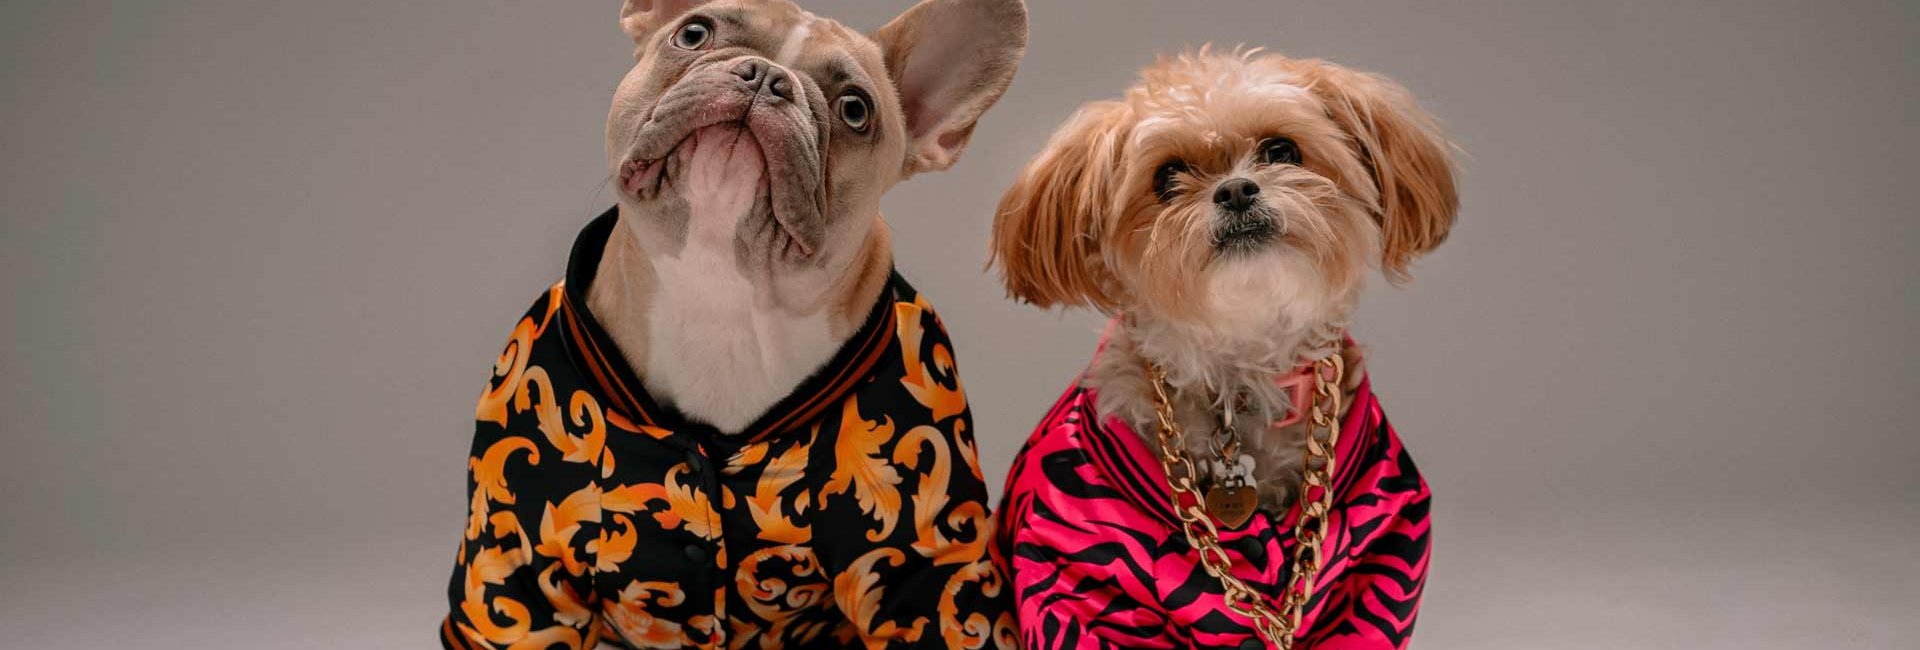 Zwei Hunde in modischer Kleidung